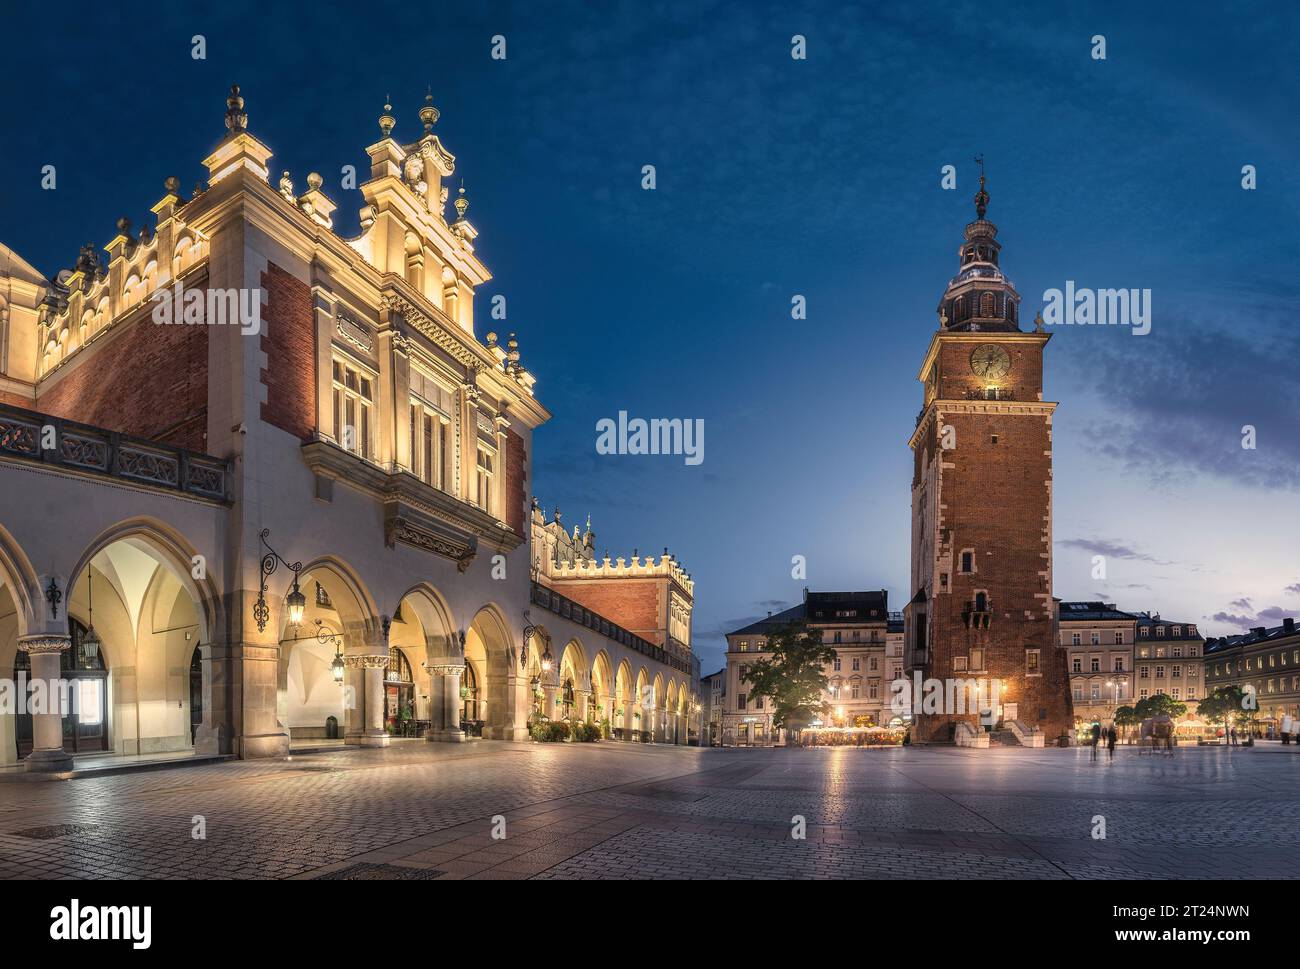 Town Hall Square, Krakow, Poland Stock Photo